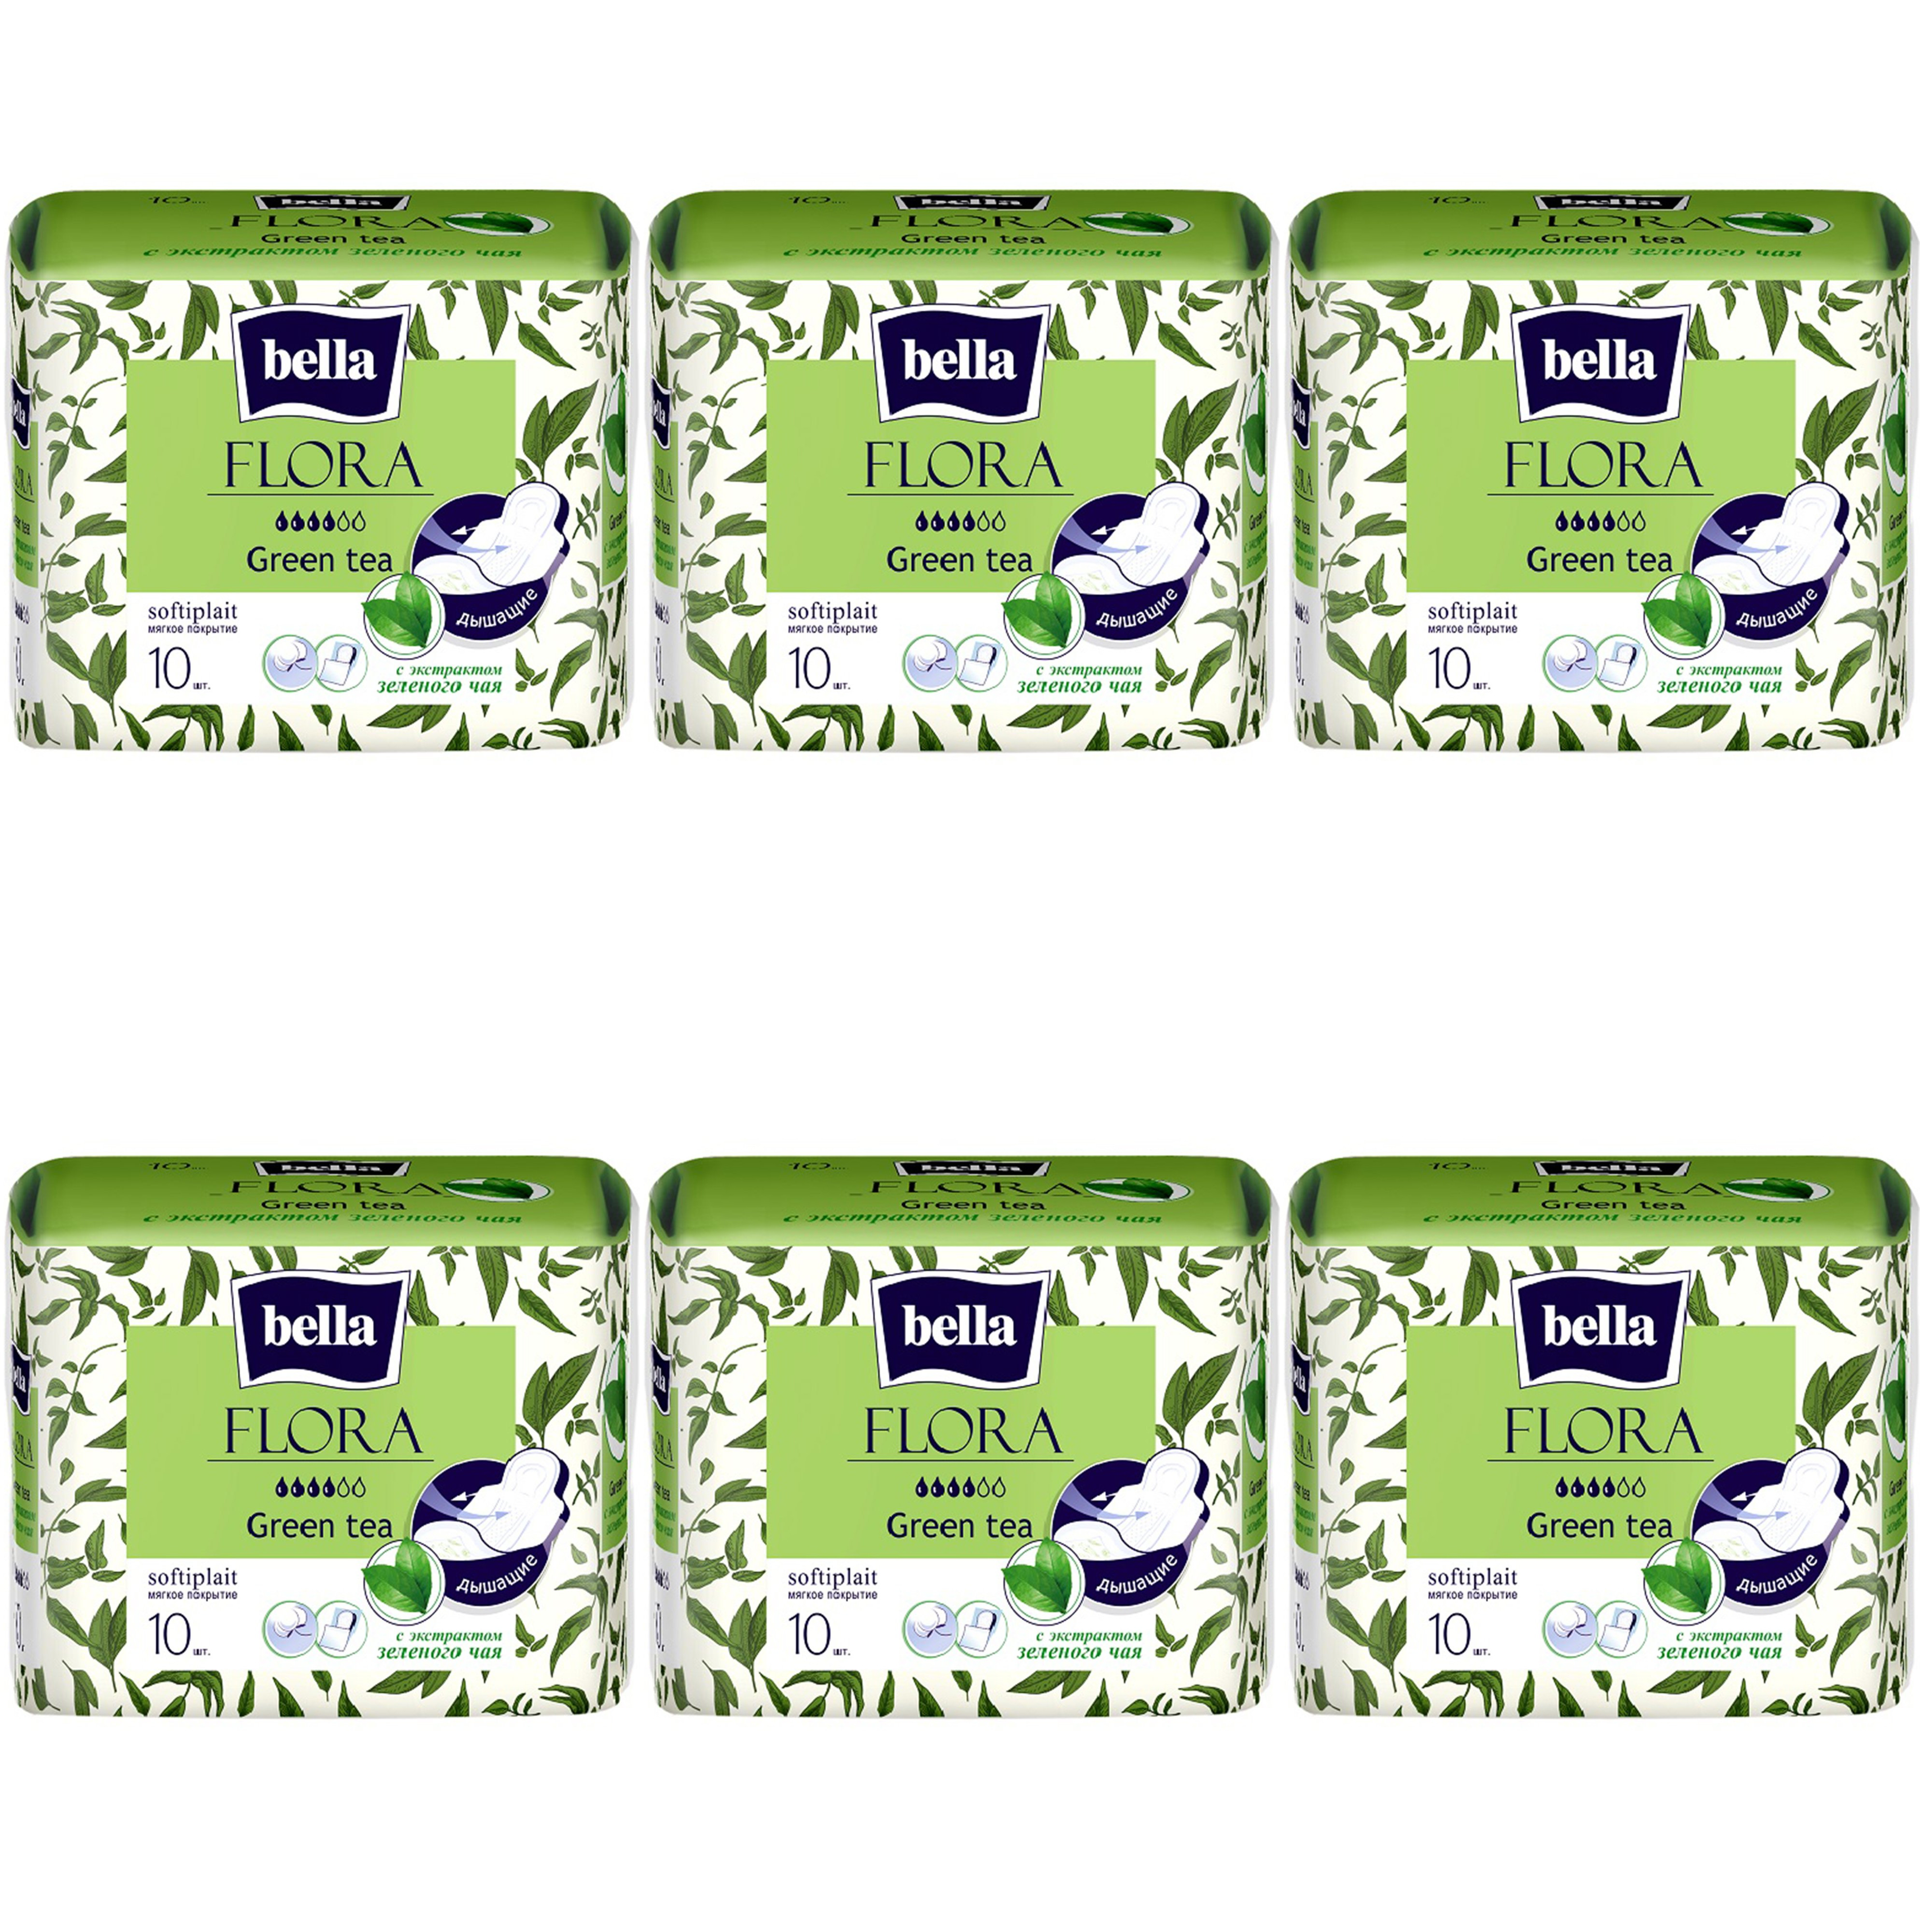 Прокладки Bella Flora Green tea, с экстрактом зеленого чая, 10шт. х 6уп. прокладки bella herbs tilia softiplait с экстрактом липового цвета 10шт 3 уп